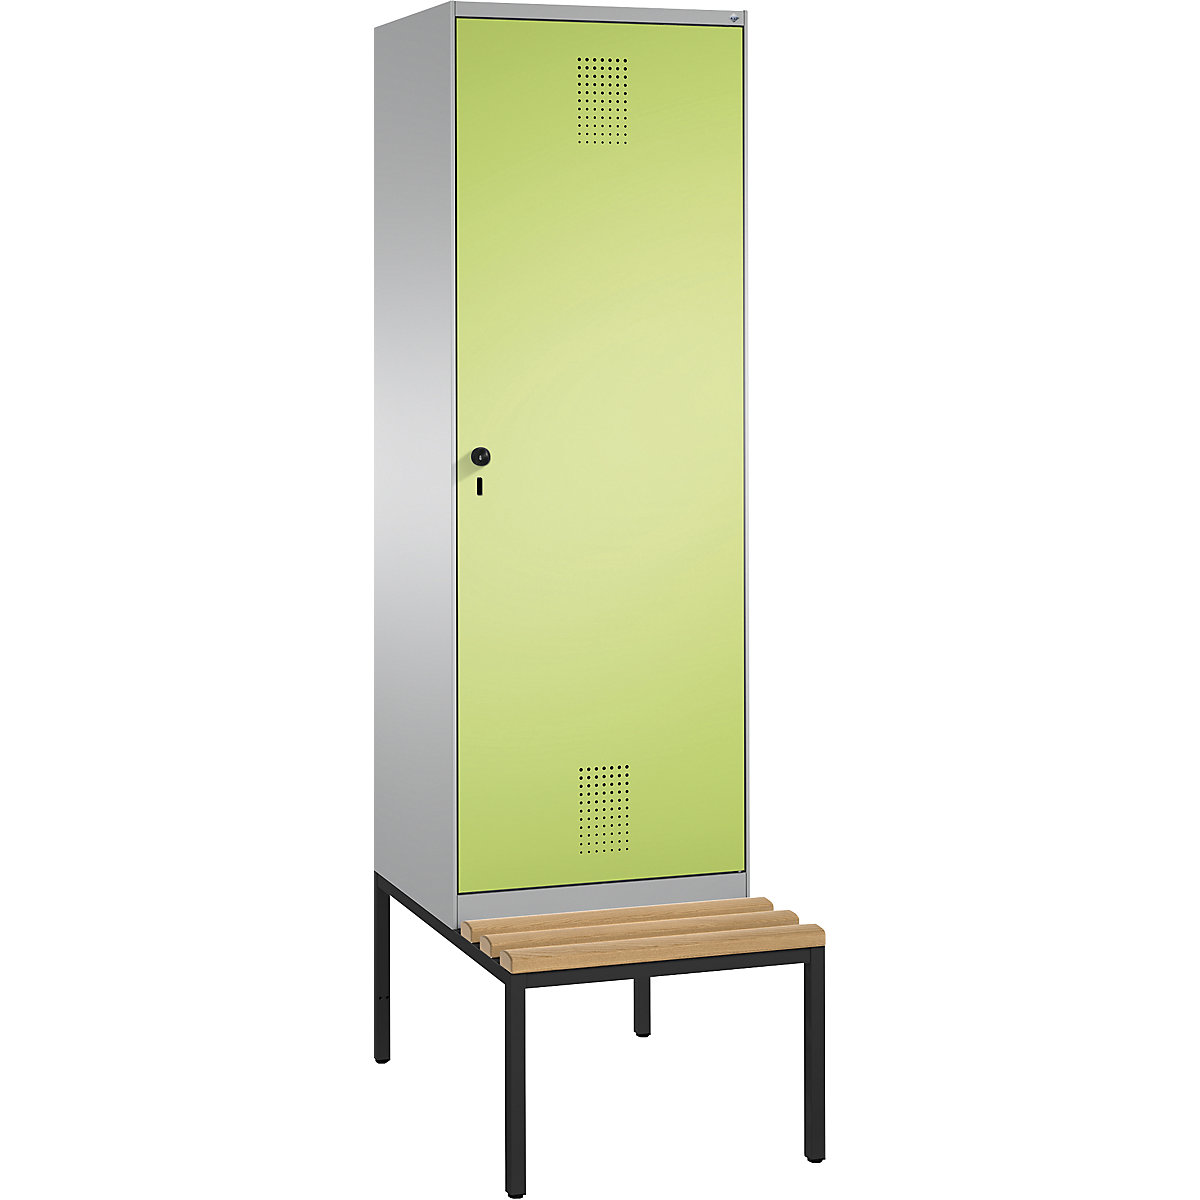 Šatní skříň s lavicí EVOLO s dveřmi přes 2 oddíly – C+P, 2 oddíly, 1 dveře, šířka oddílu 300 mm, bílý hliník / viridianová zelená-15